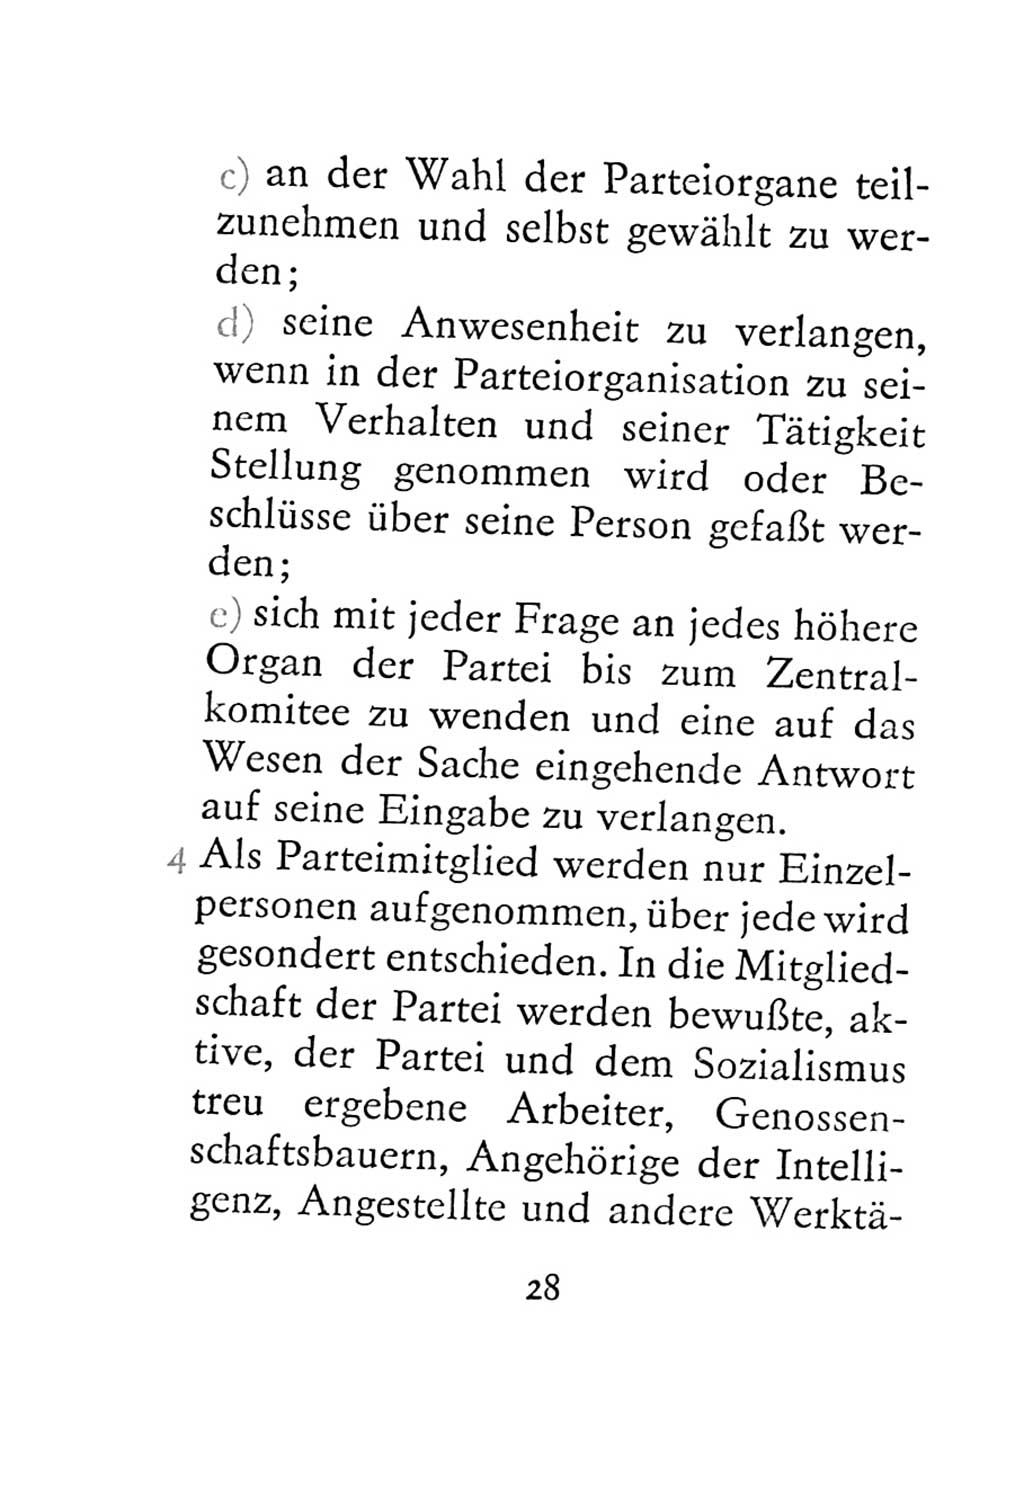 Statut der Sozialistischen Einheitspartei Deutschlands (SED) 1967, Seite 28 (St. SED DDR 1967, S. 28)